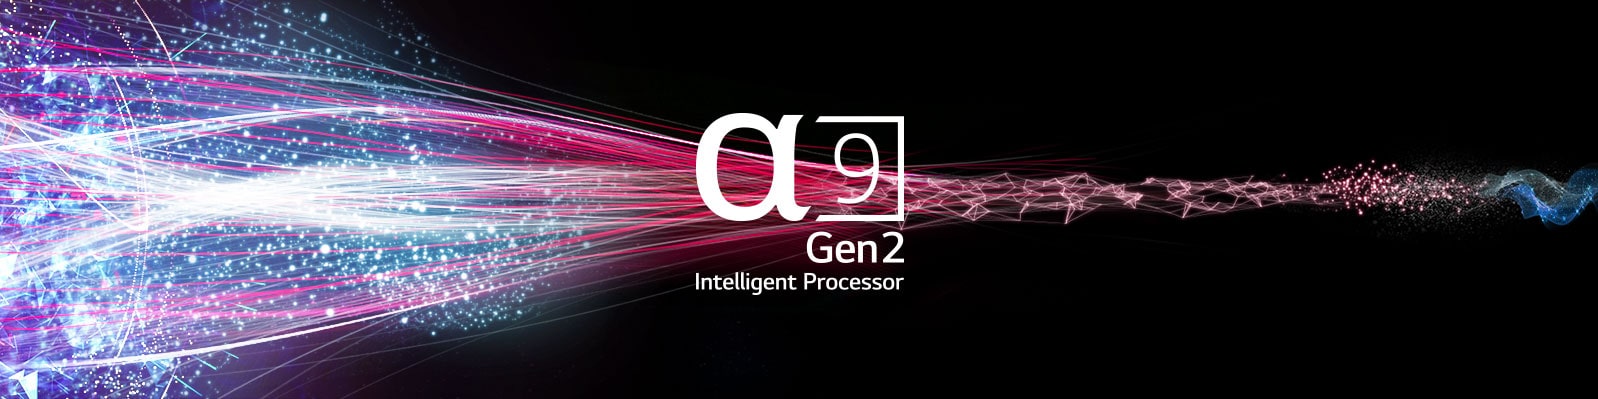 α9 Gen2 Intelligent Processor